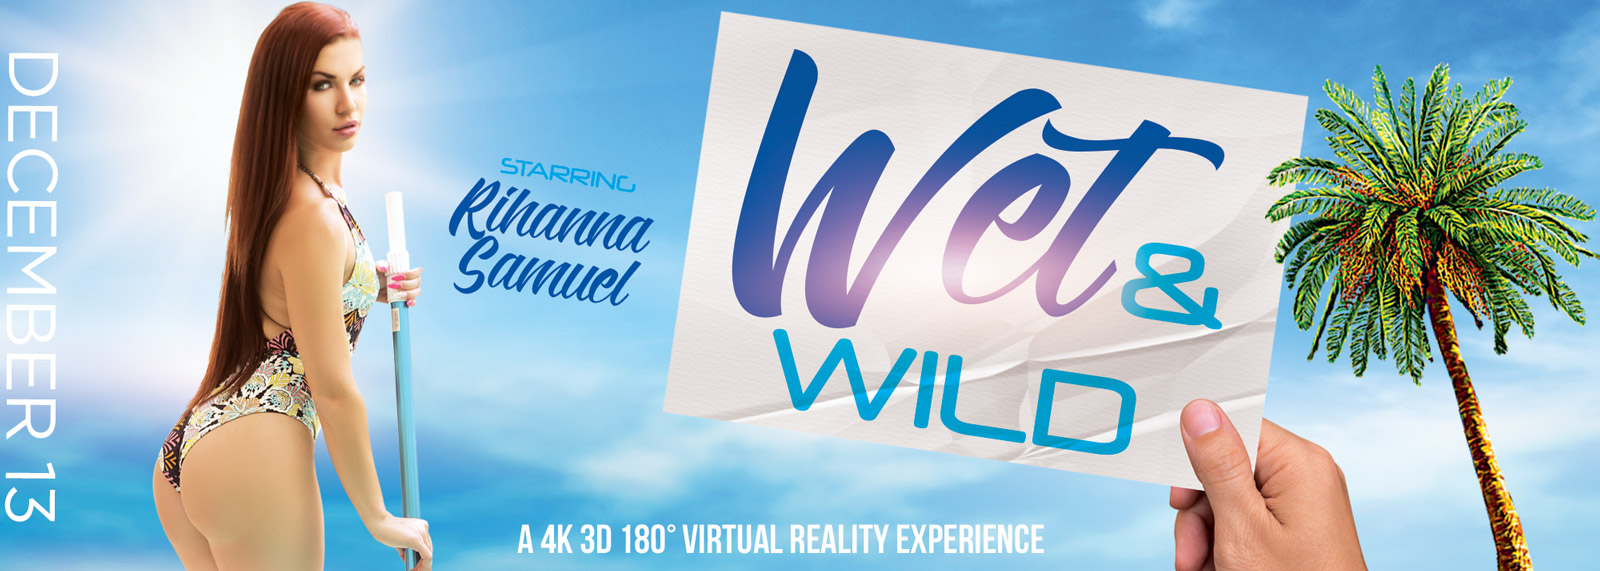 Wet & Wild - VR Porn Video, Starring: Rihanna Samuel